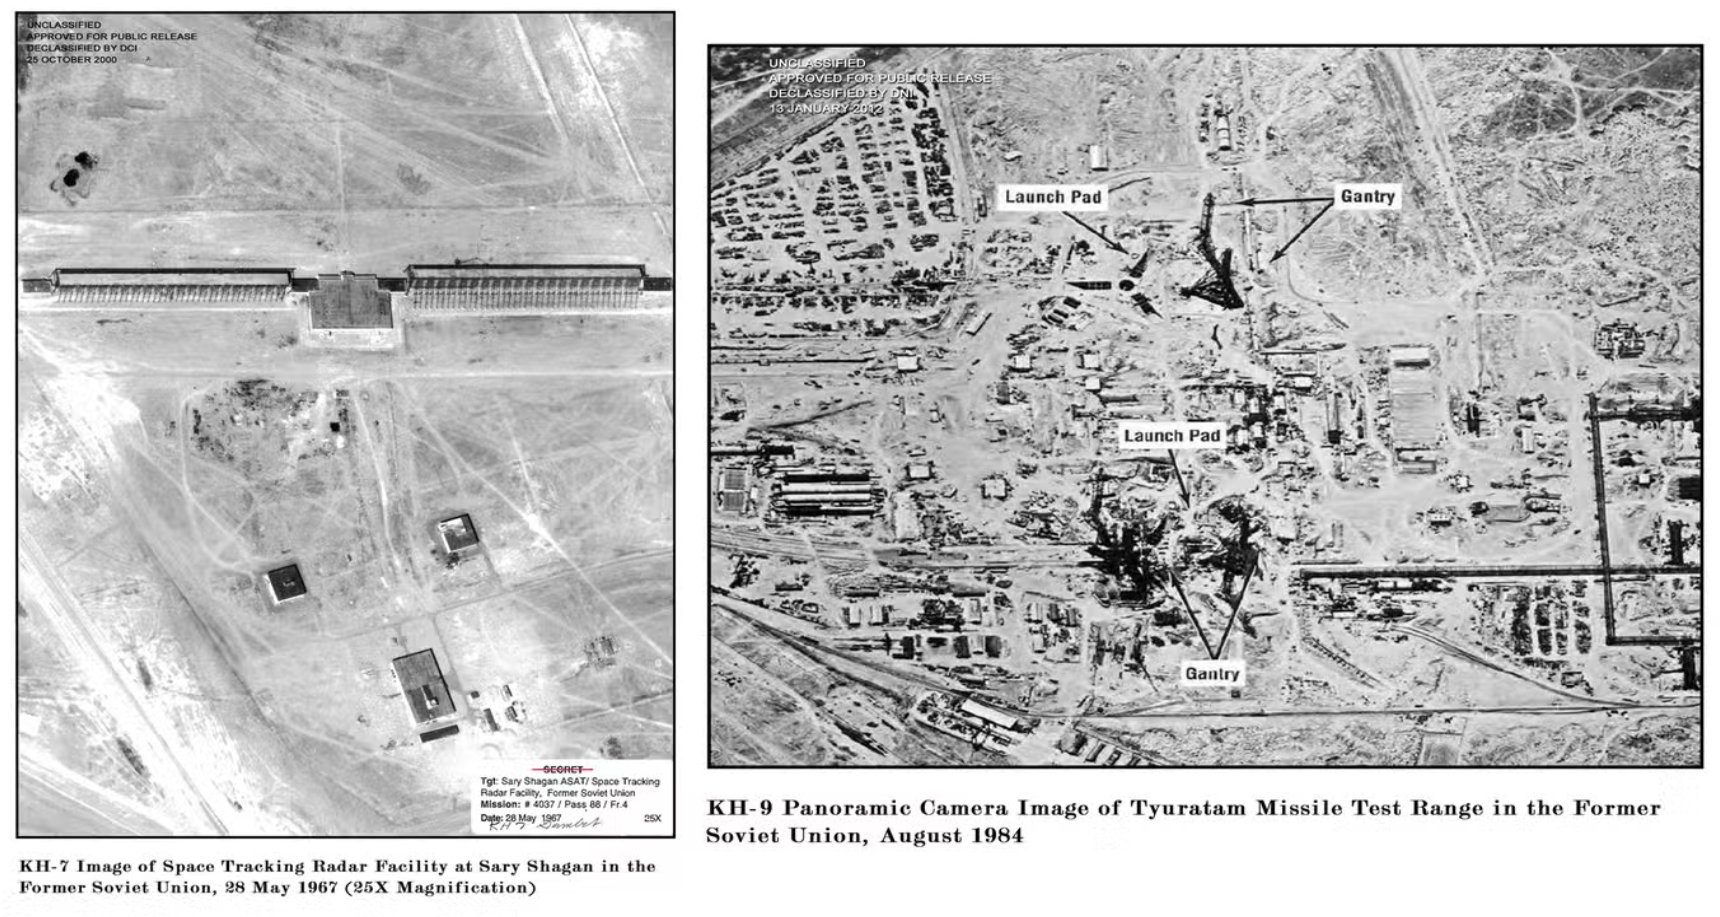 صورة من القمرين غامبيت وهيكساغون لمنشآت رادار سوفياتية (إلى اليسار 1967) ومنطقة اختبار صواريخ (إلى اليمين 1984) رفع السرية عنها